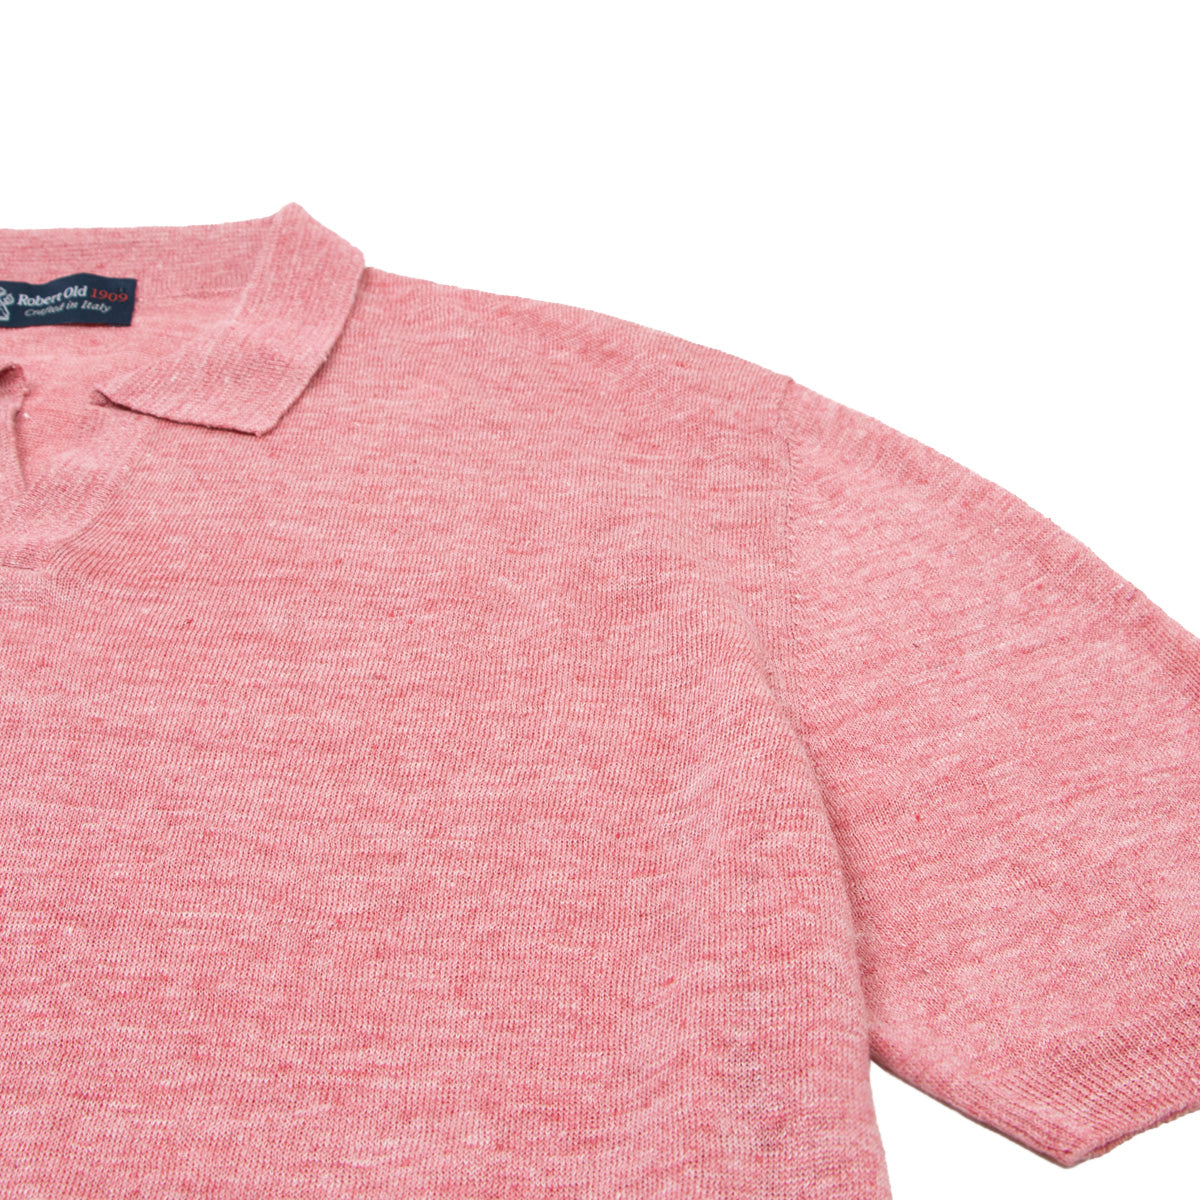 Pink Linen Open Collar Knitted Polo Shirt  Robert Old   